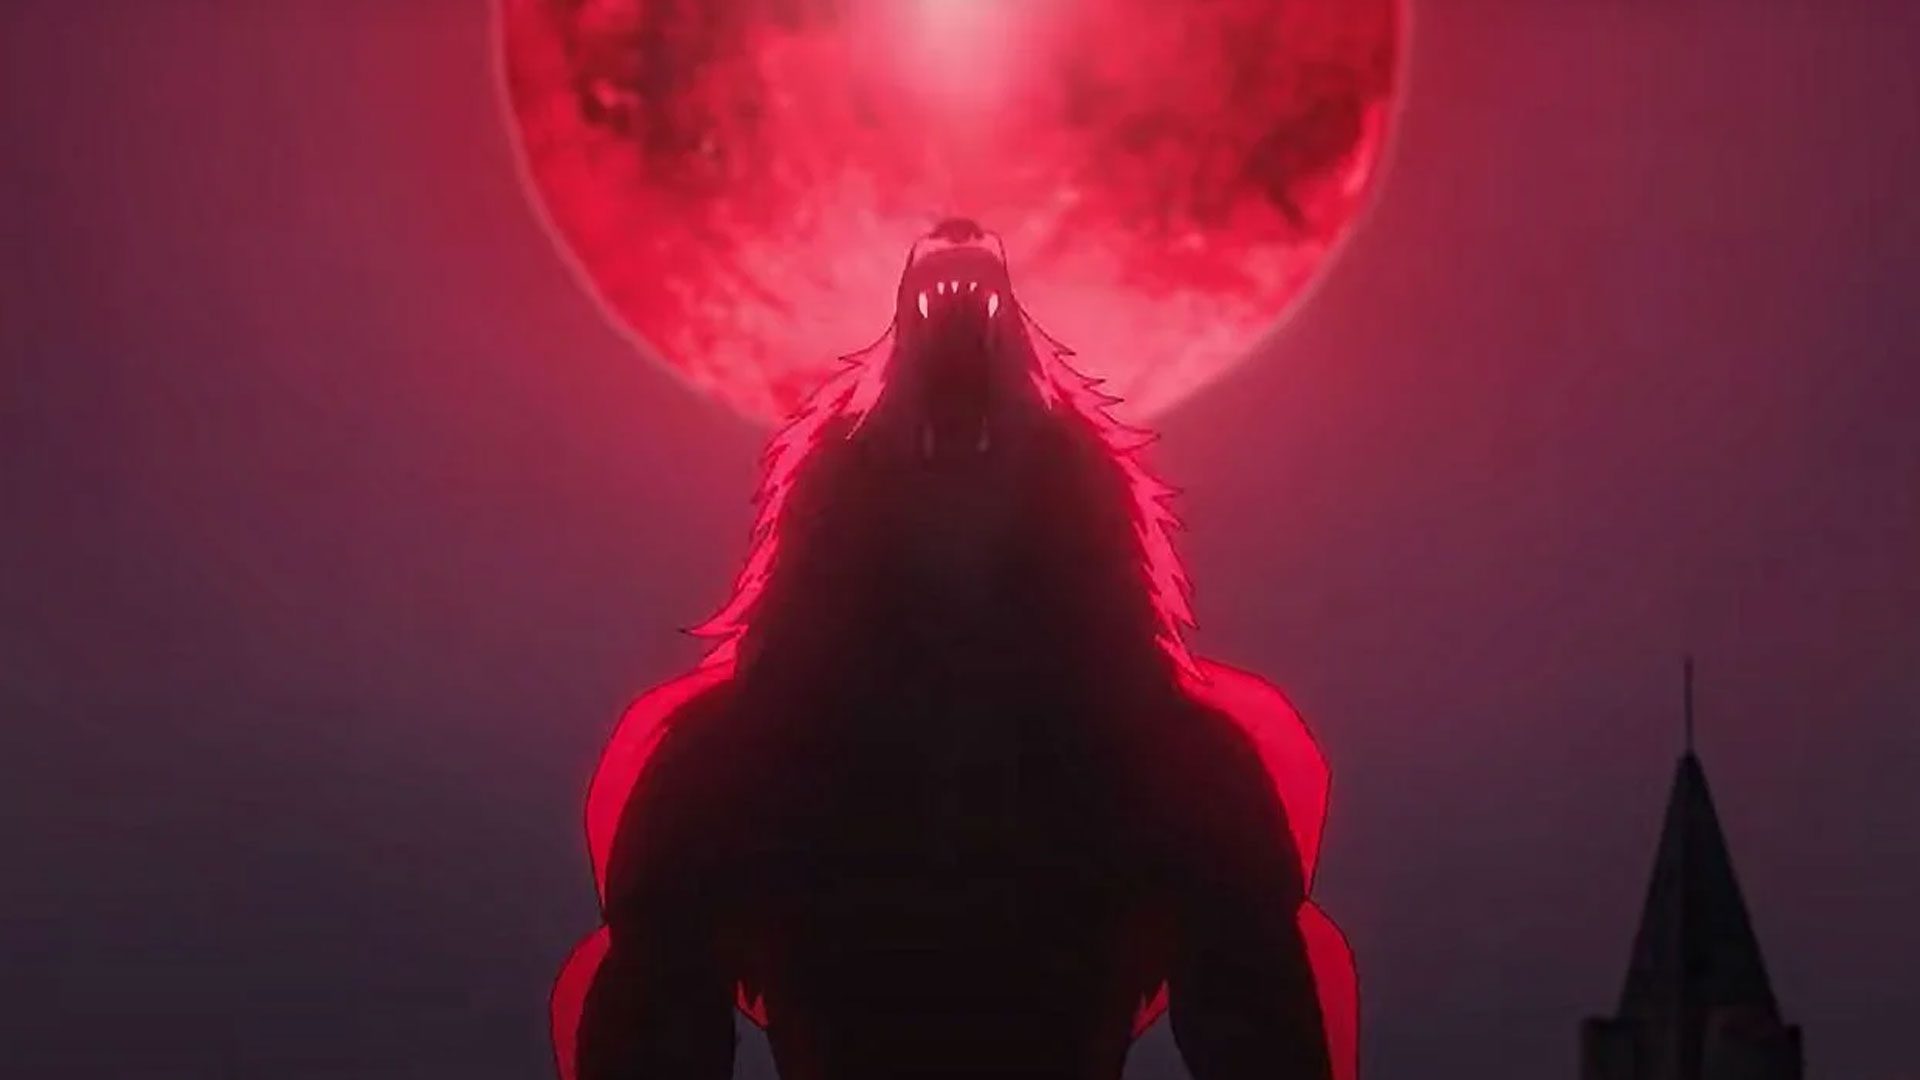 The Witcher: Lenda do Lobo ganha novo trailer e confirma dubladores